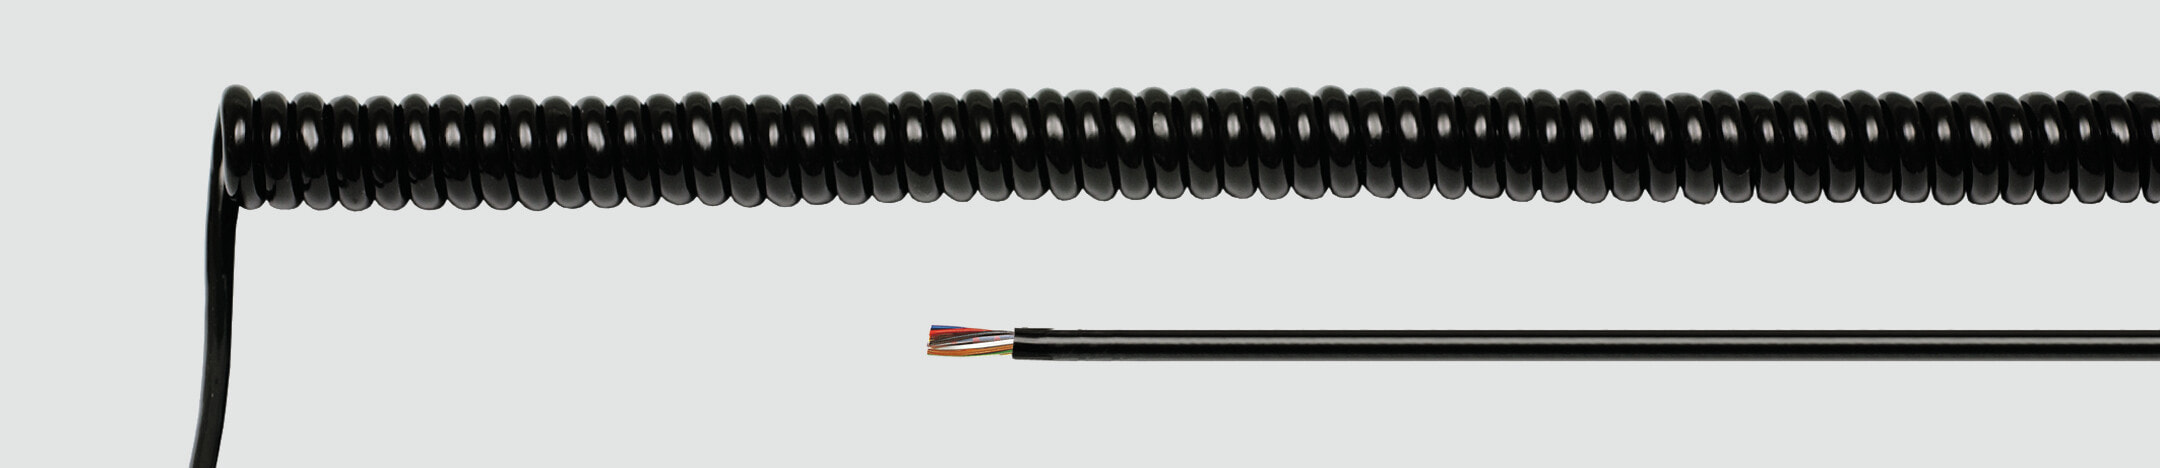 Helukabel 85760 - Low voltage cable - Black - Cooper - 0.5 mm² - 155.5 kg/km - -25 - 70 °C